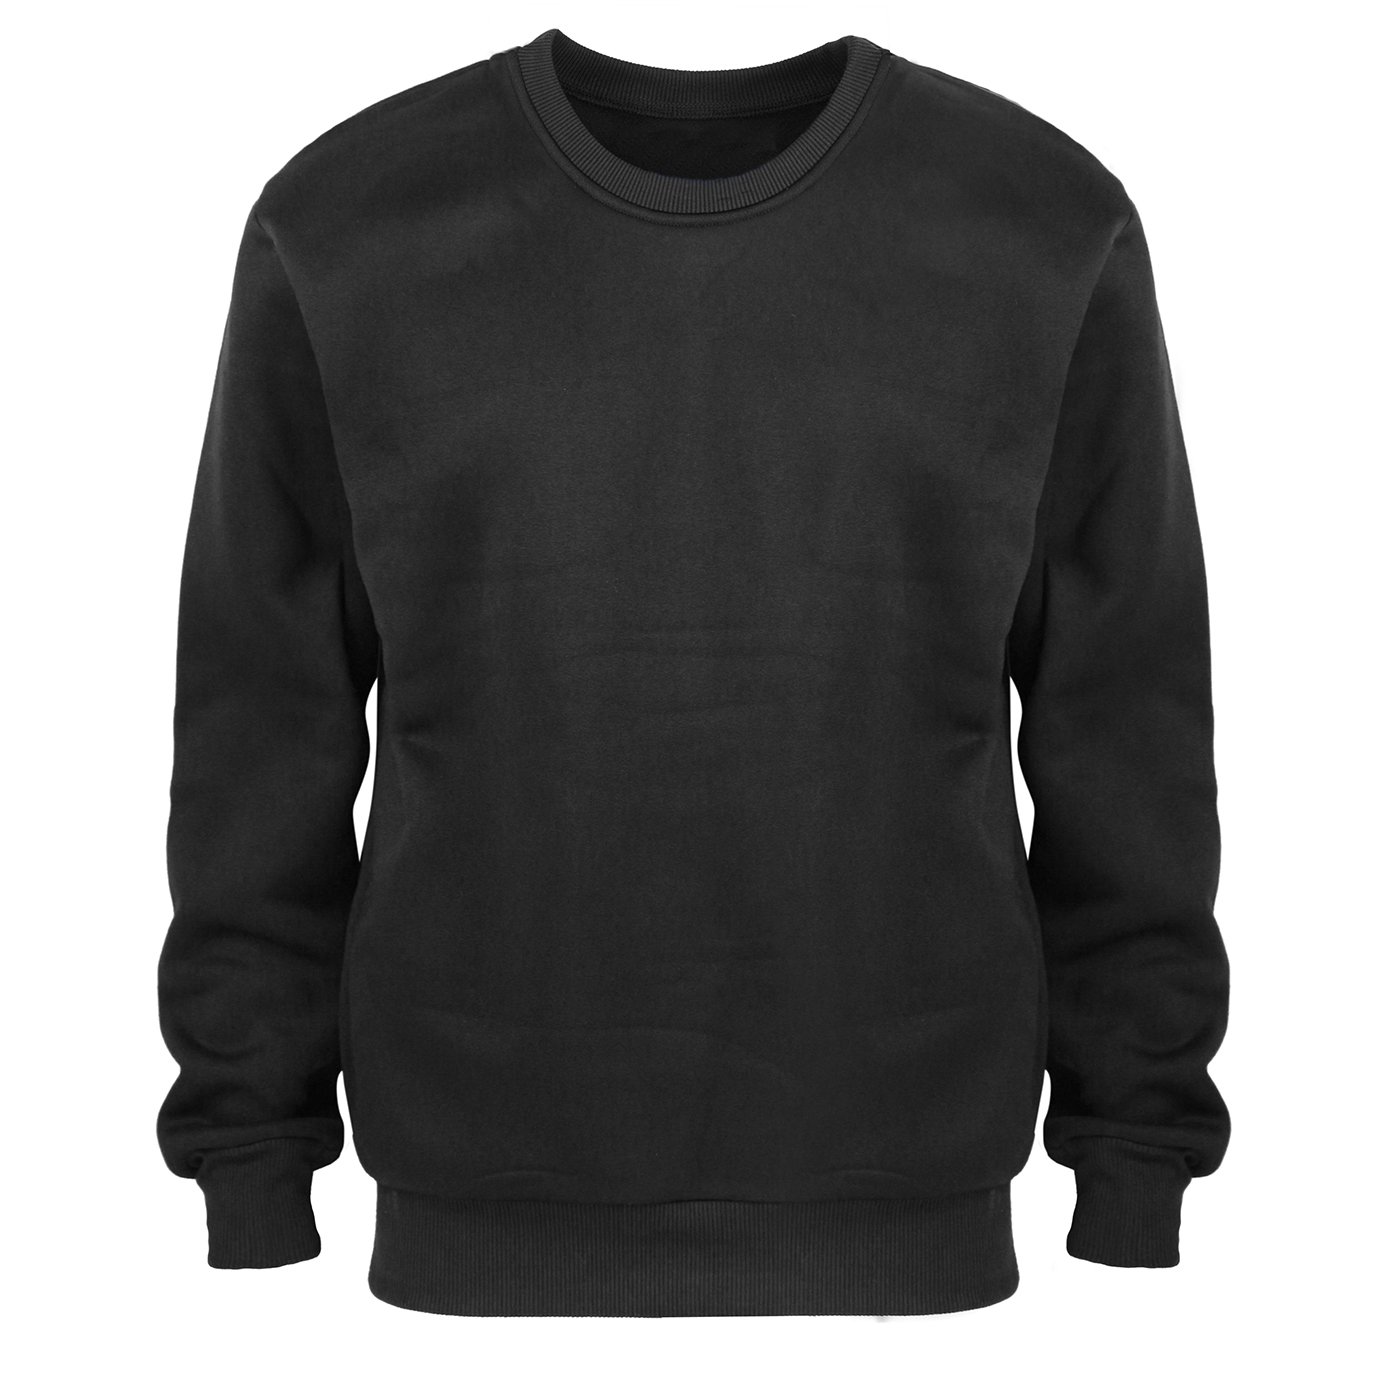 Wholesale Men's Fleece Crew Neck Sweatshirts in Black - DollarDays